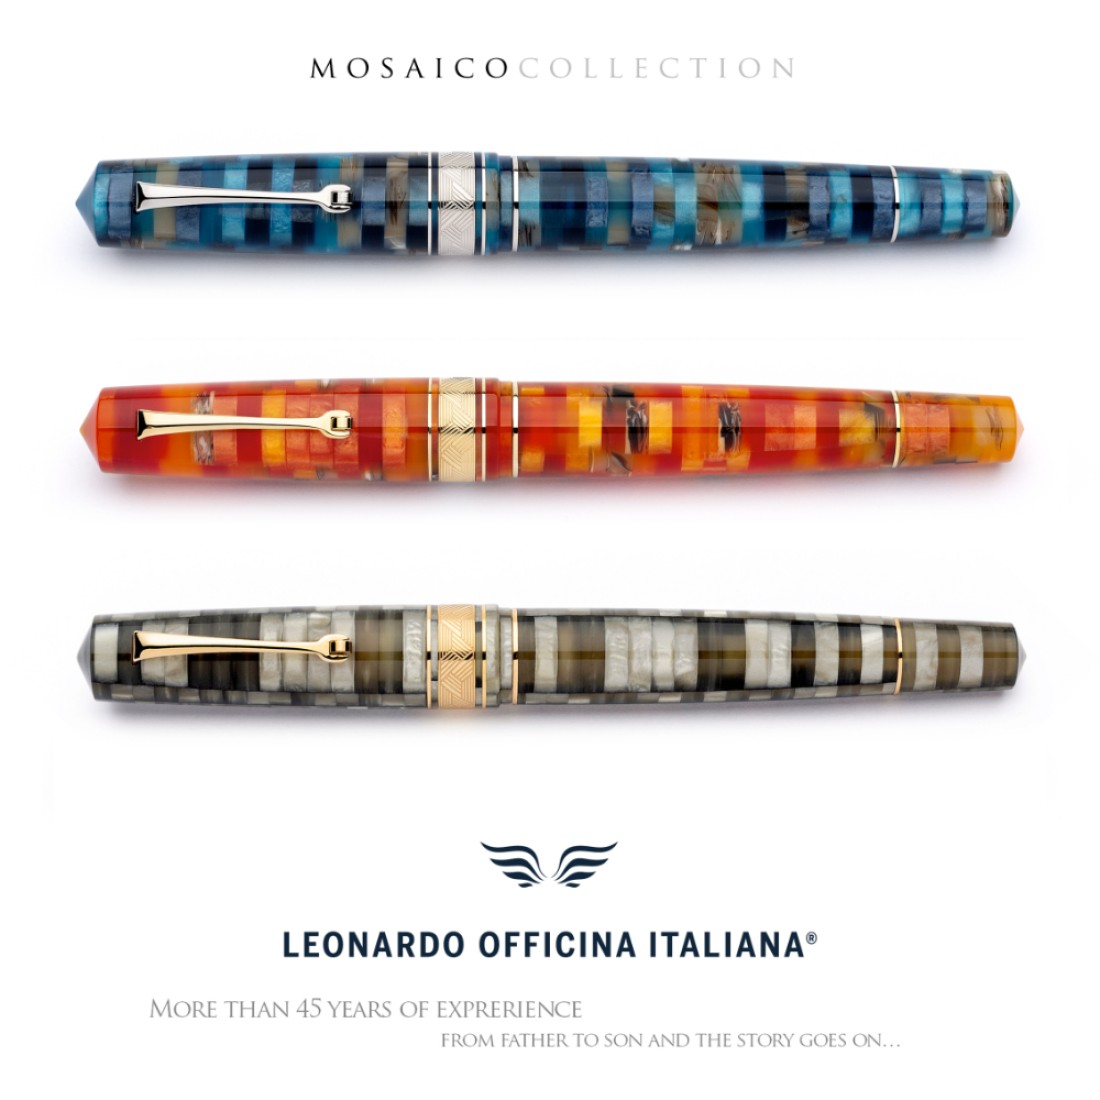 Leonardo Mosaico Chiaroscuro GT Fountain pen